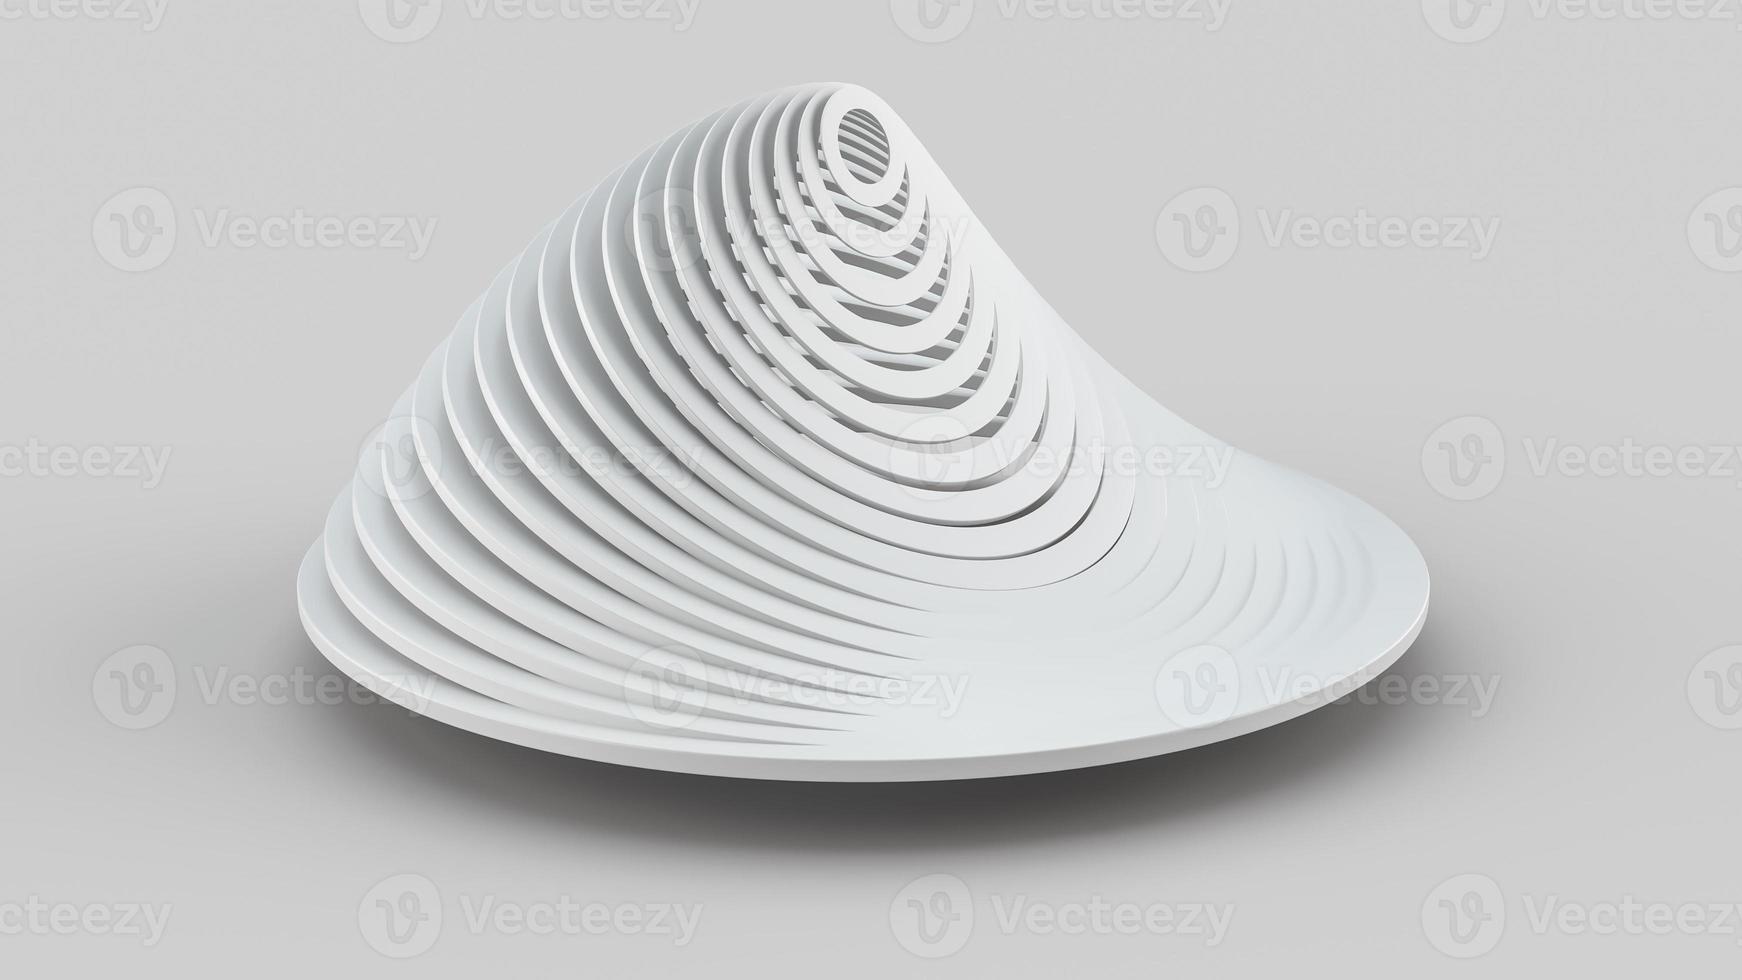 arte abstracto de remolino surrealista infinito retorcido forma redonda en material plástico mate gris claro fondo blanco monocromo abstracto 3d ilustración foto